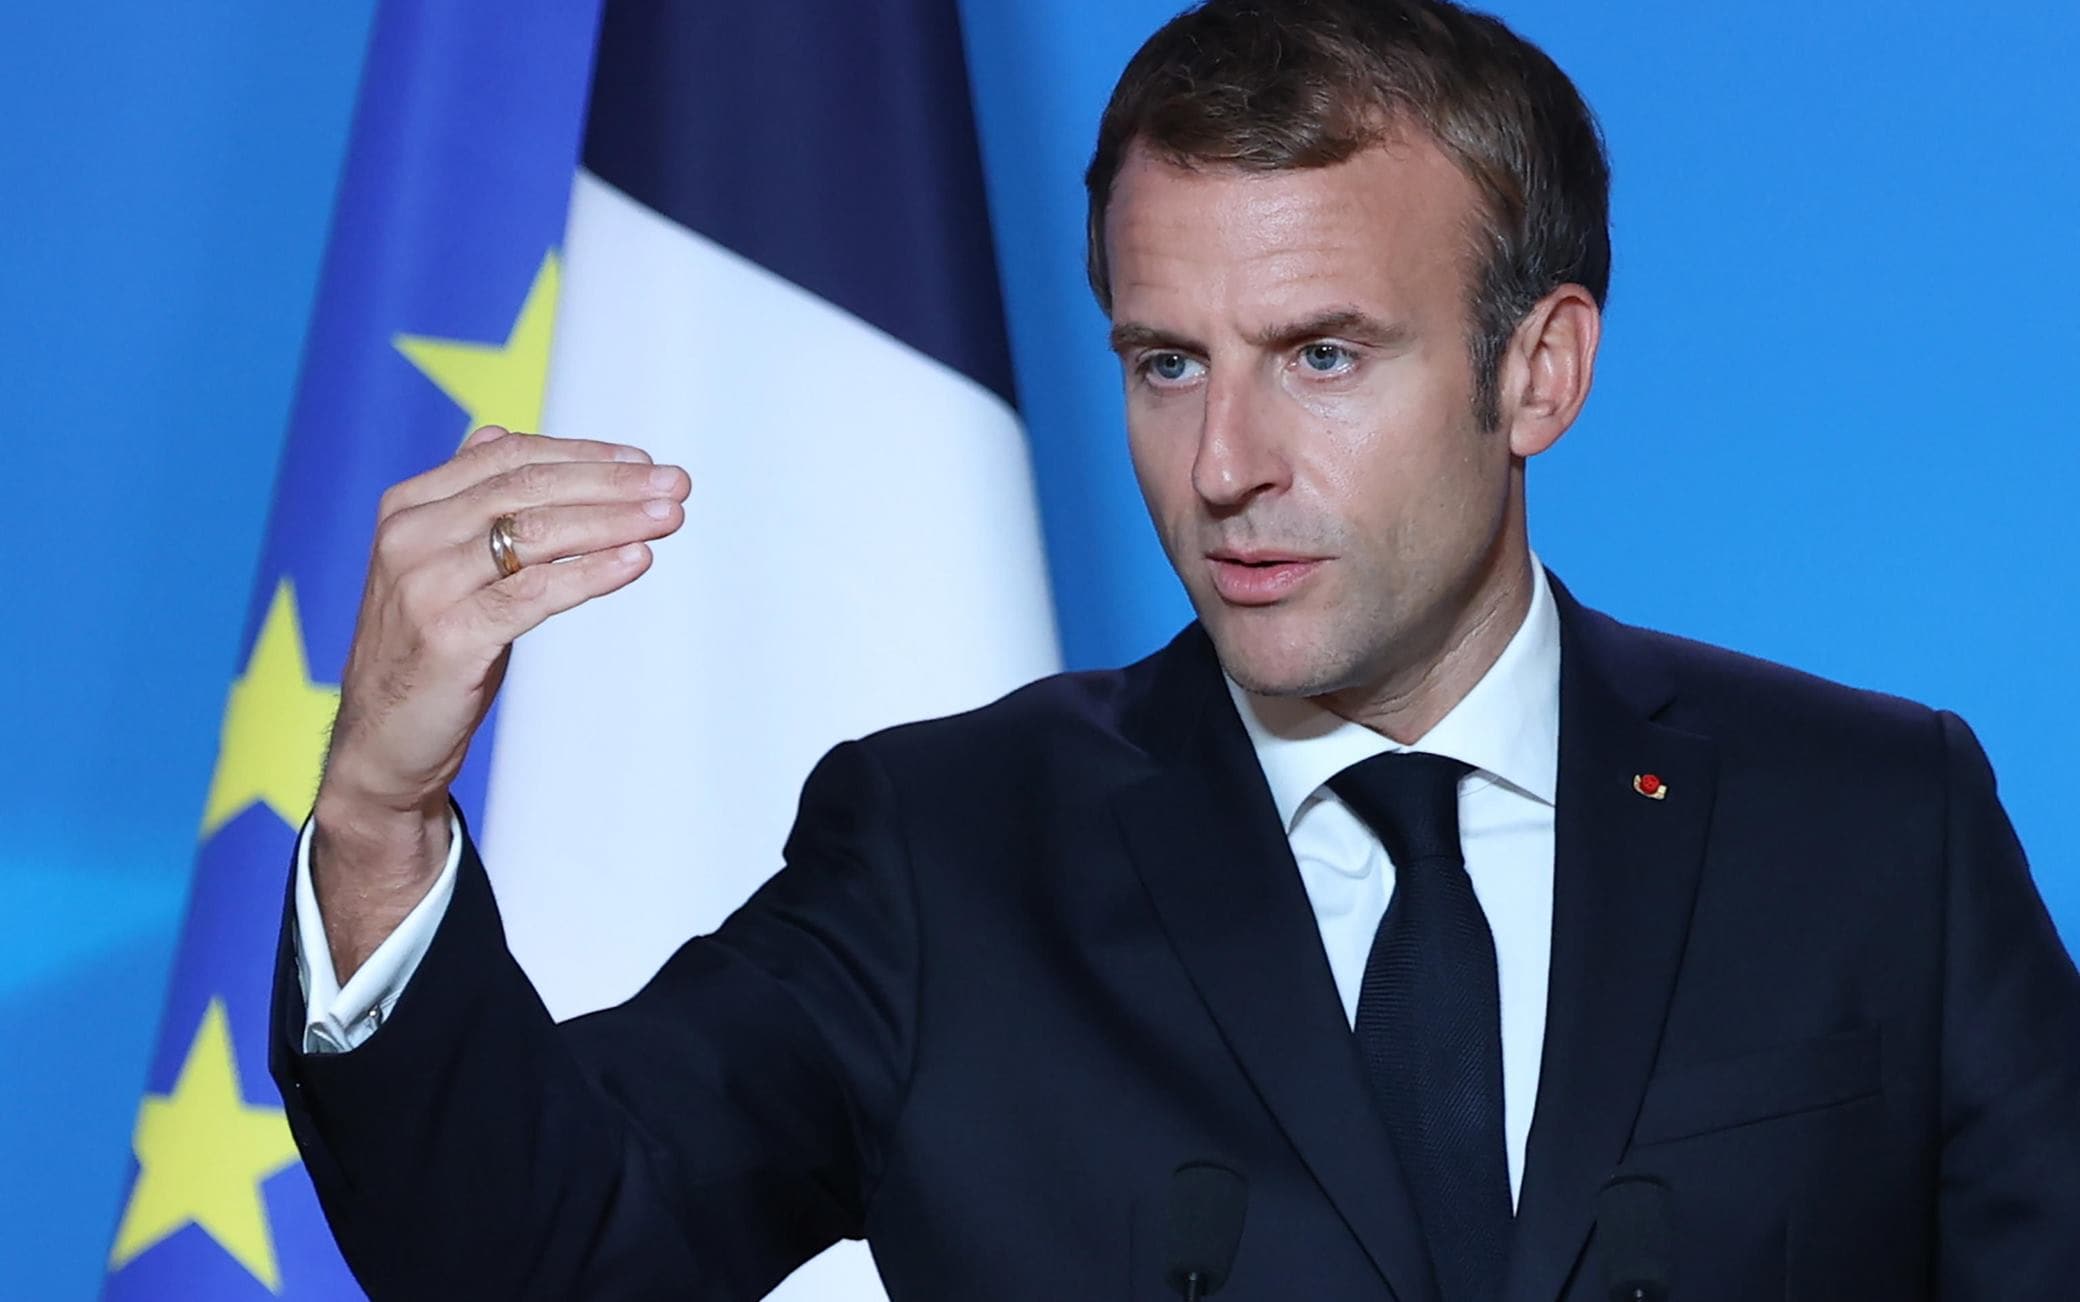 Emmanuel Macron au G20 Rome 2021 : le portrait du président français